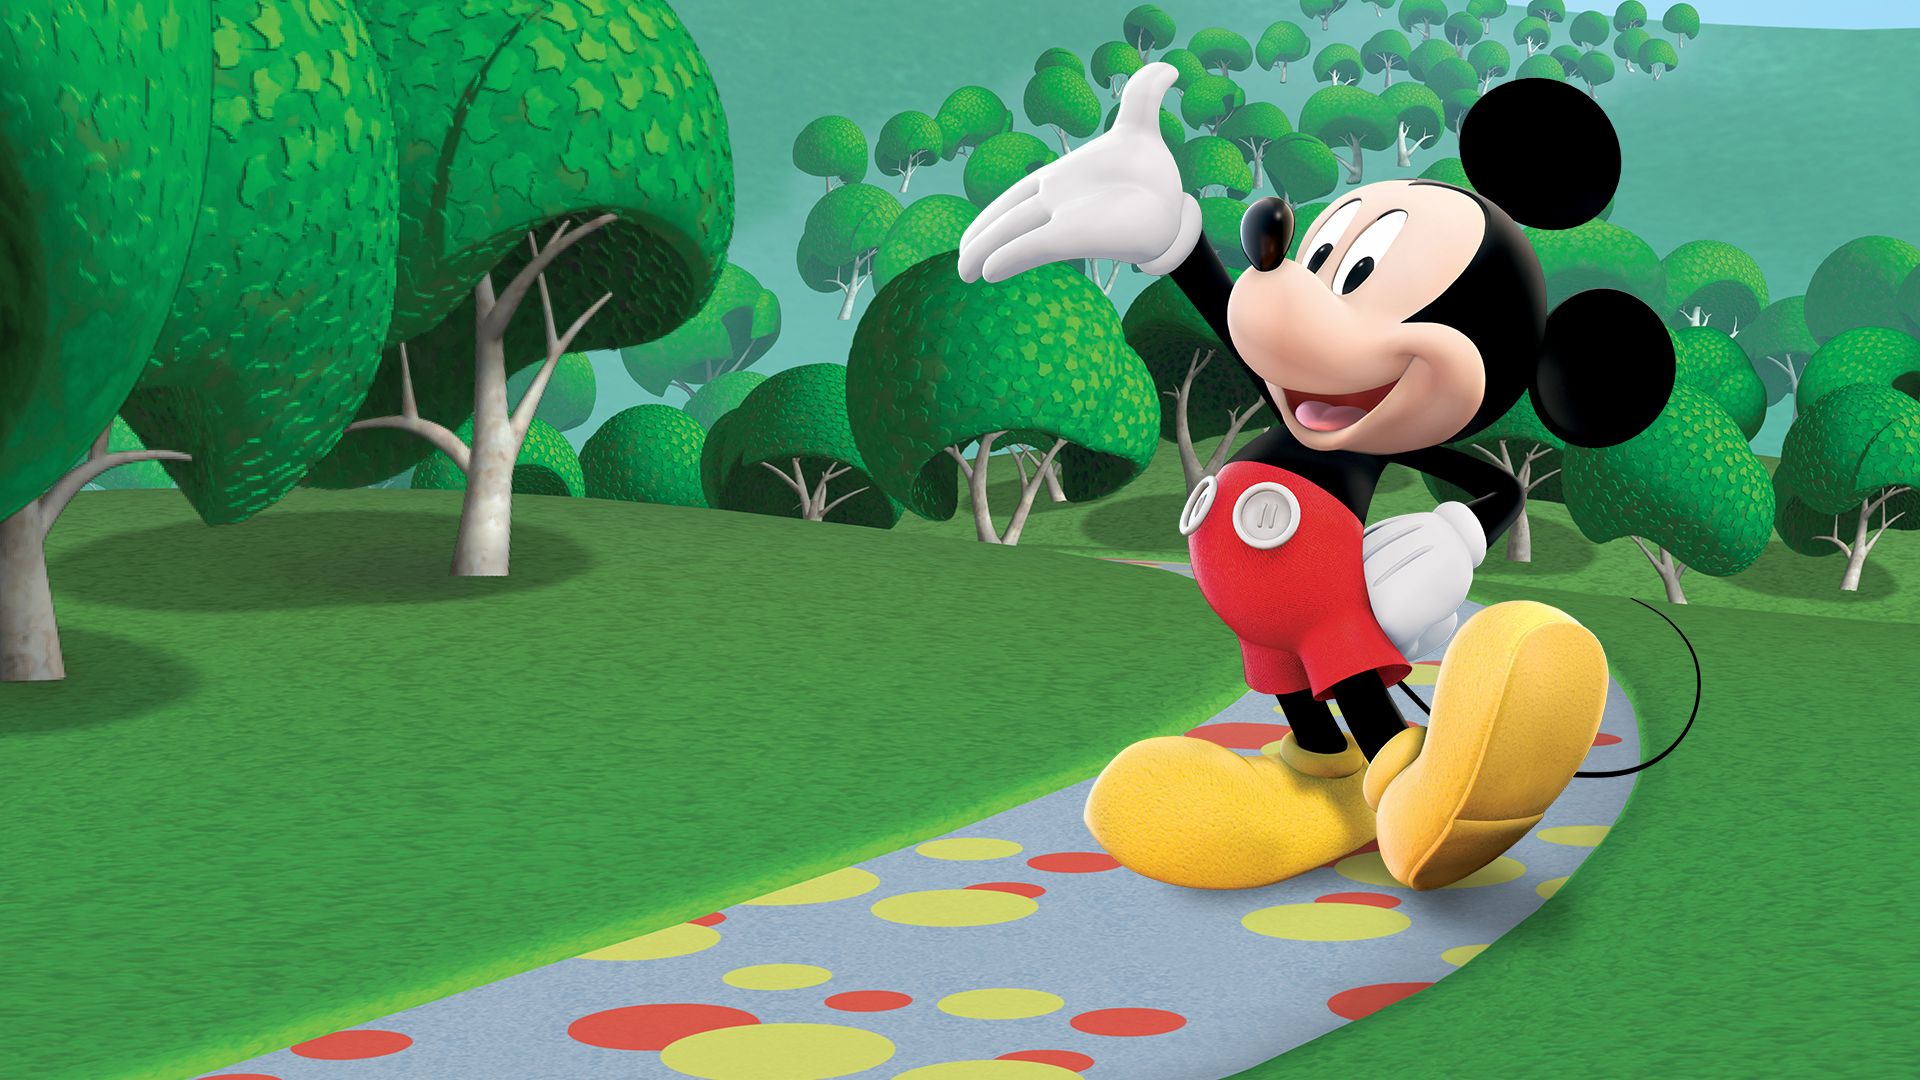 Ver La casa de Mickey Mouse | Episodios completos | Disney+